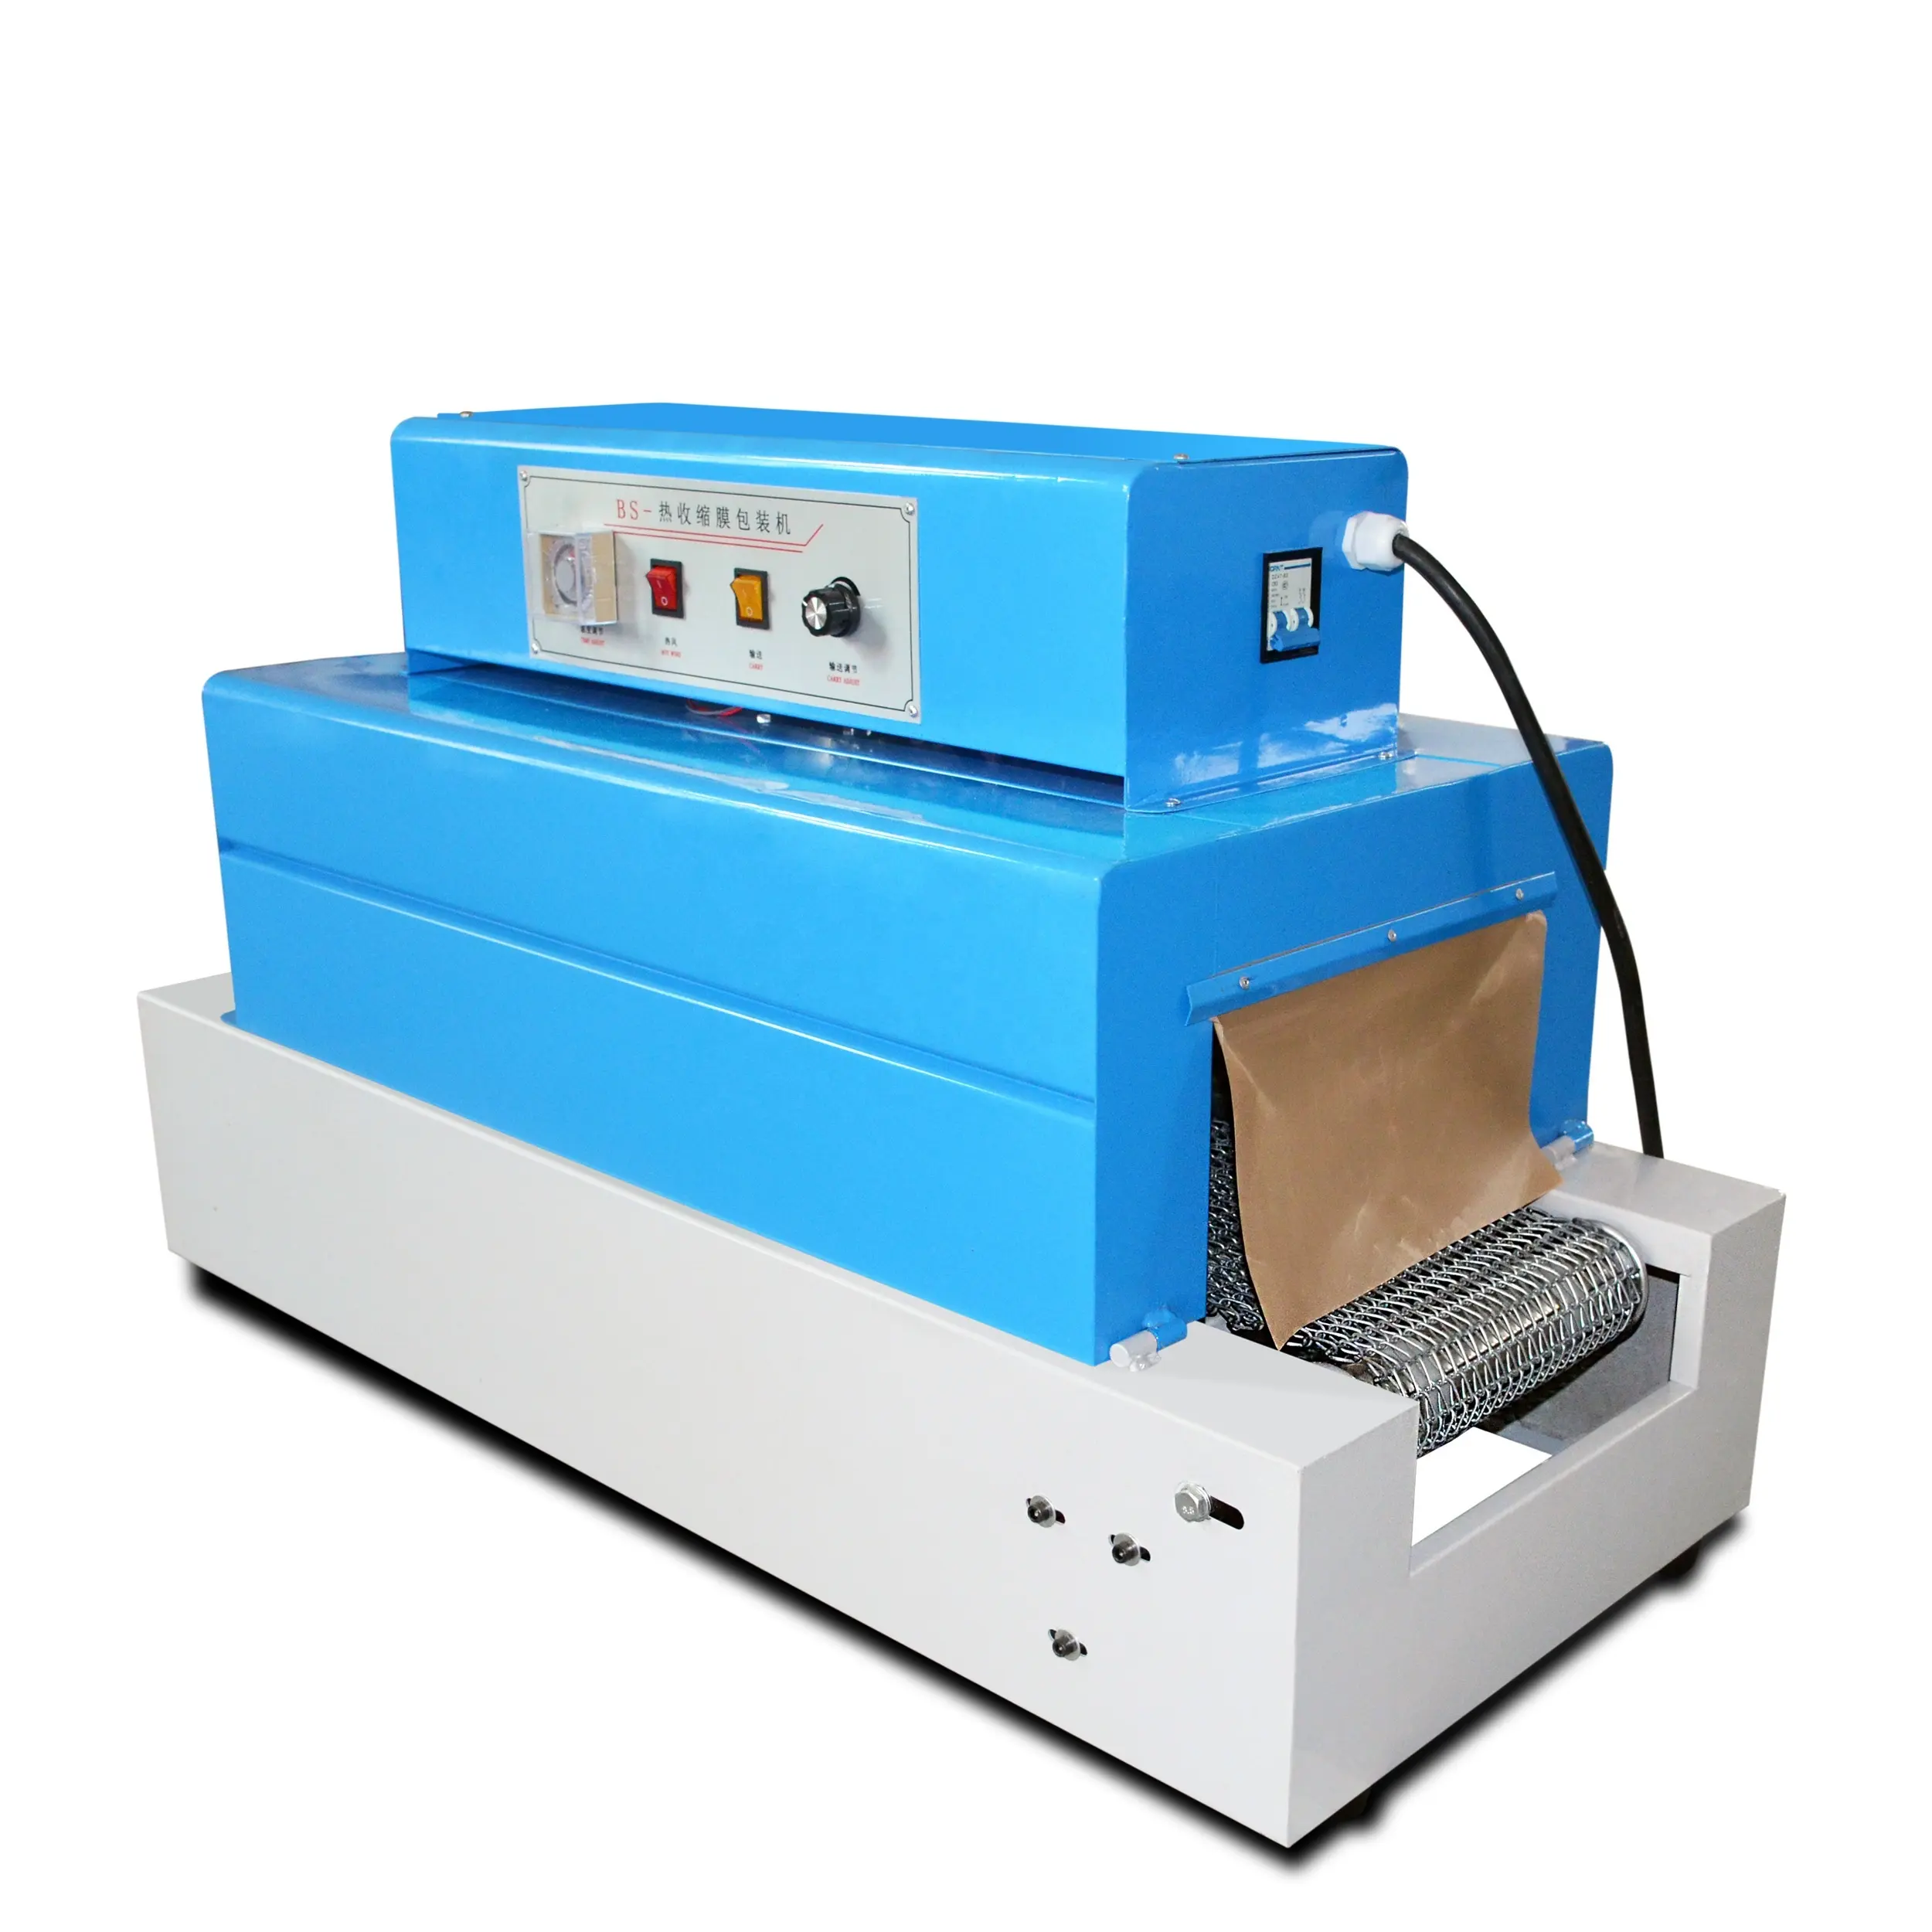 Elettrico a infrarossi ray piatto PVC pellicola termoretraibile macchine imballaggio BS-260